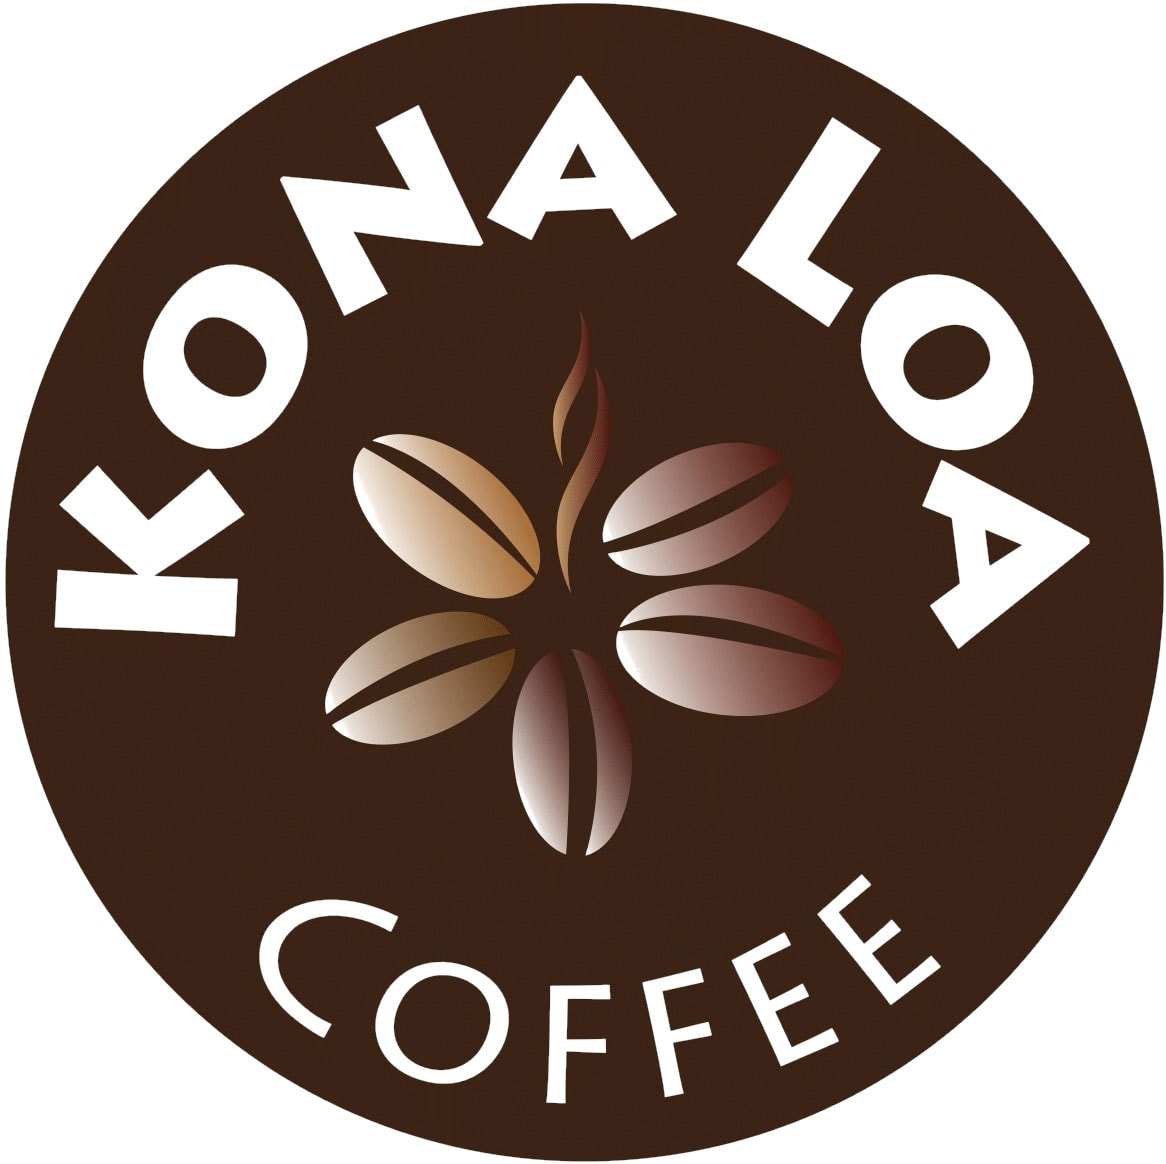 Kona Loa Coffee logo